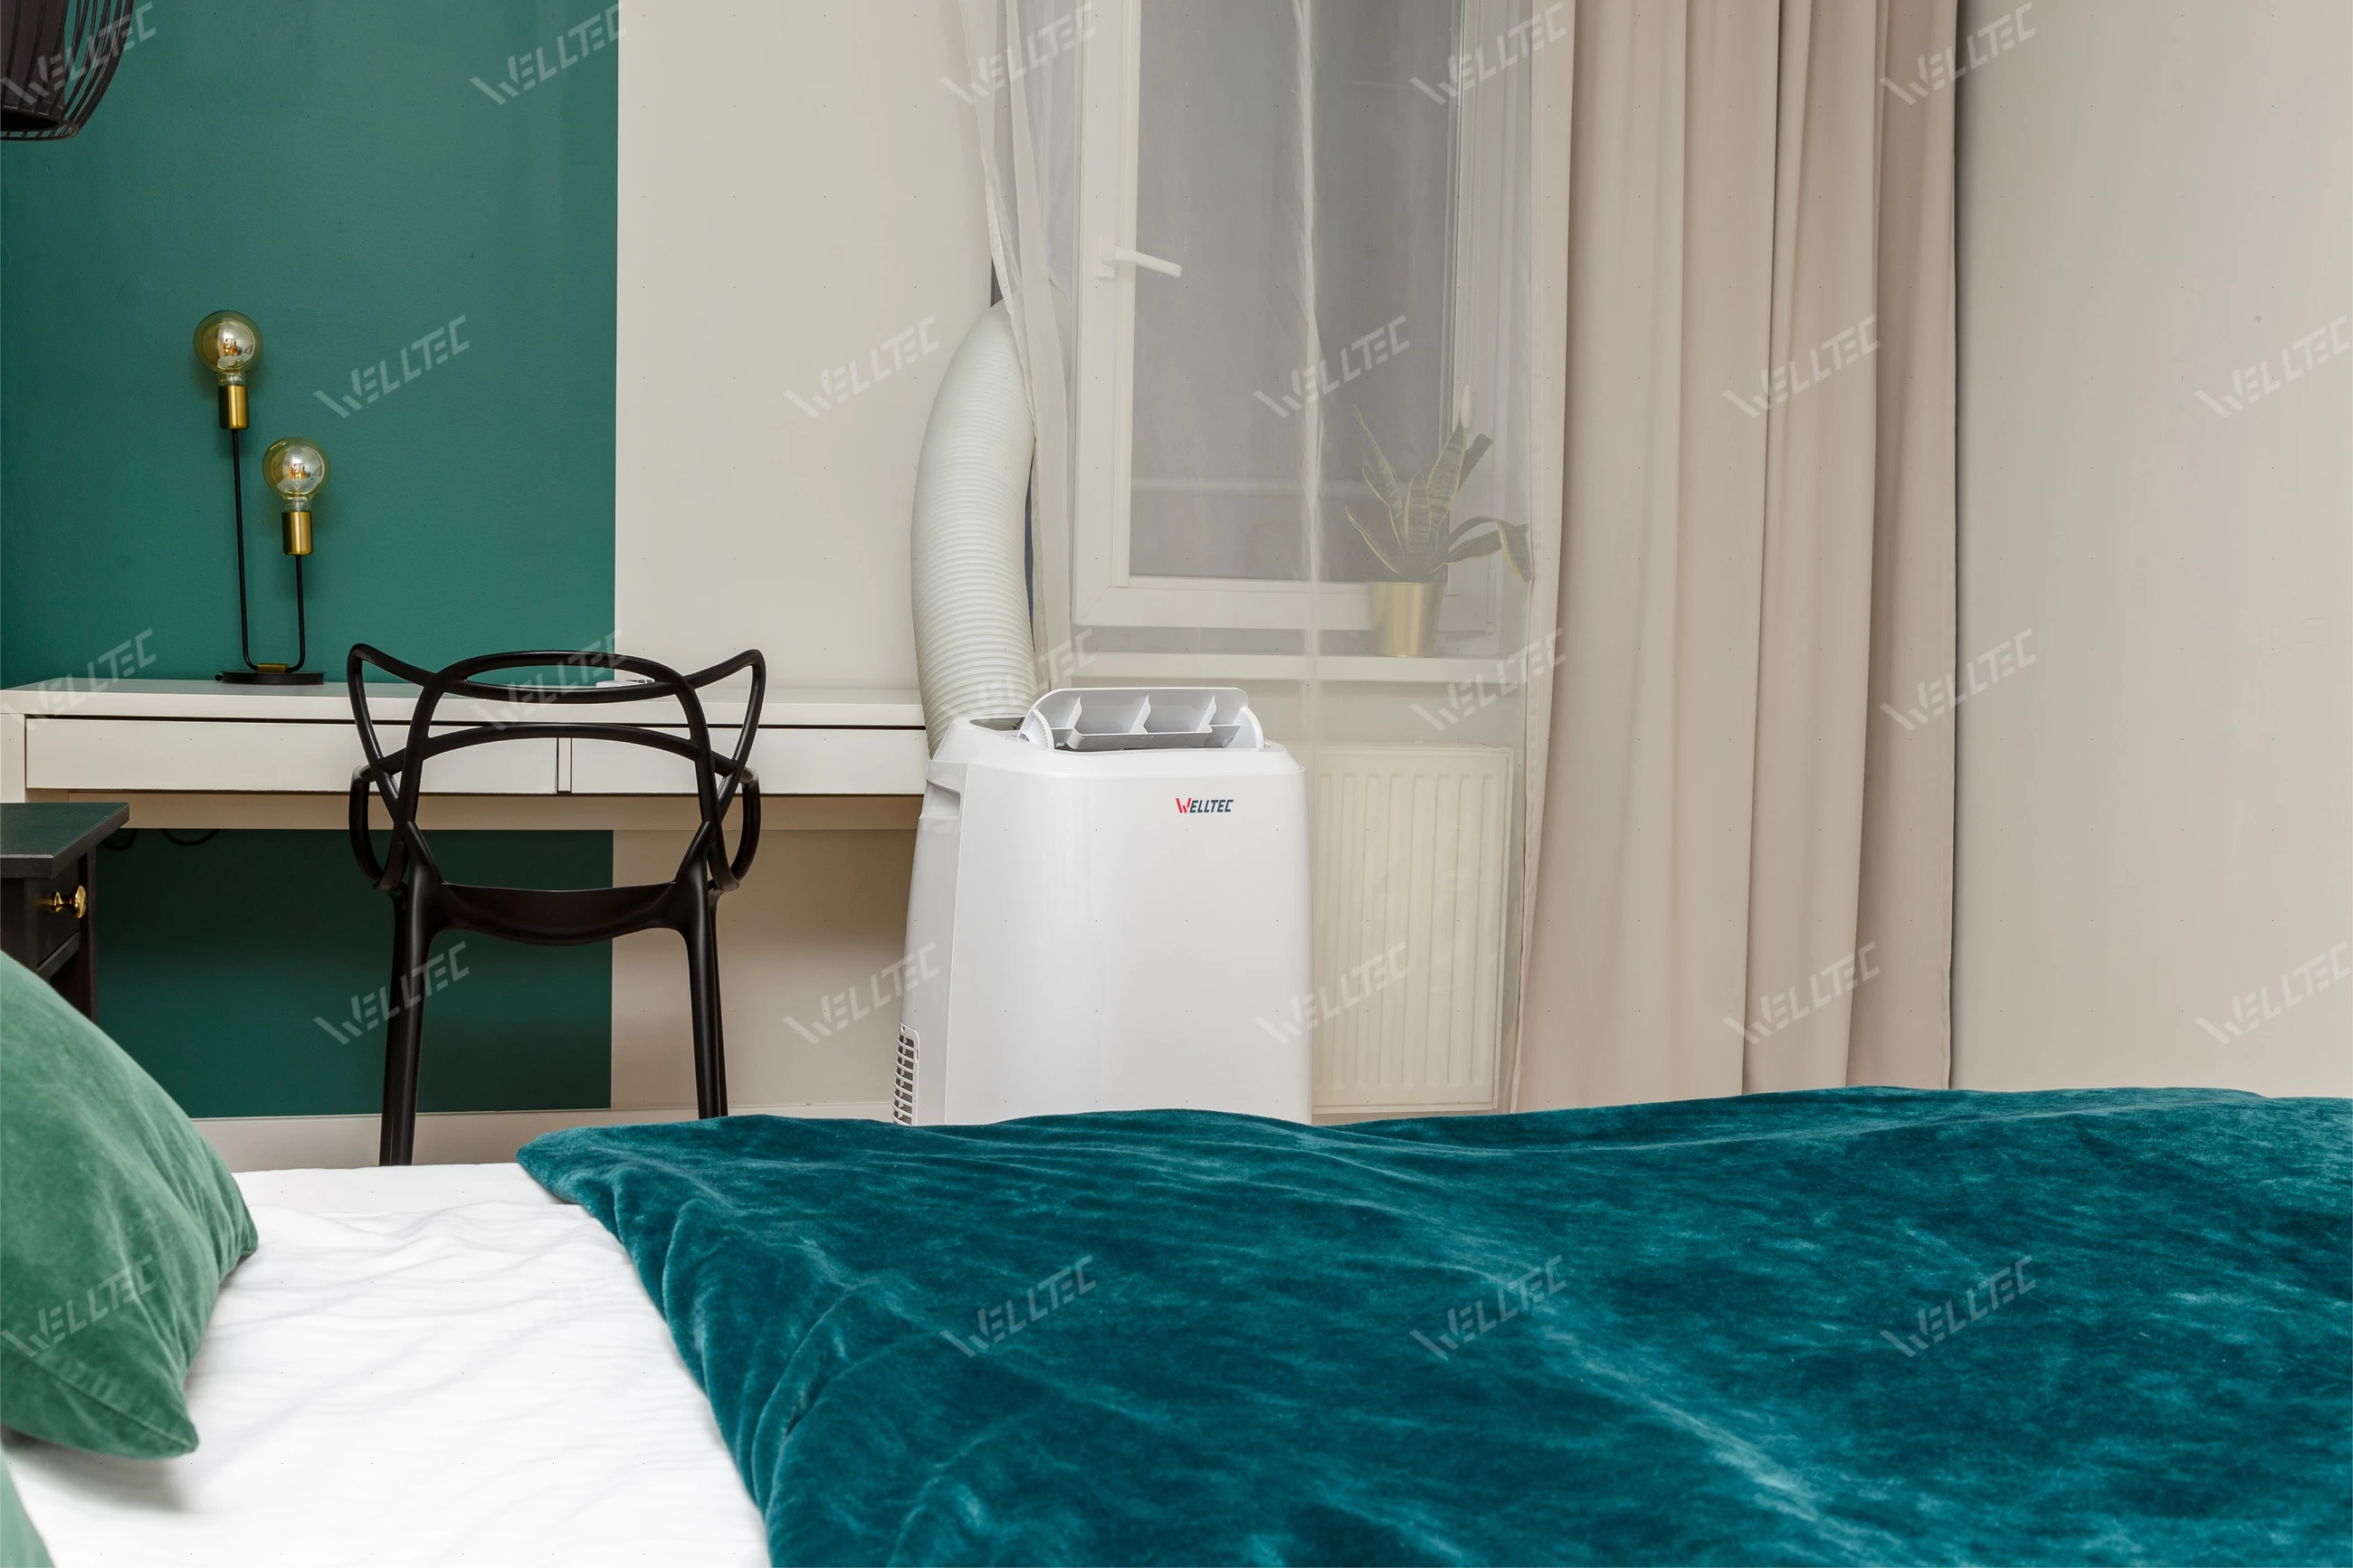 Klimatyzator przenośny Welltec ACN14 - sprawdzi się w sypialni